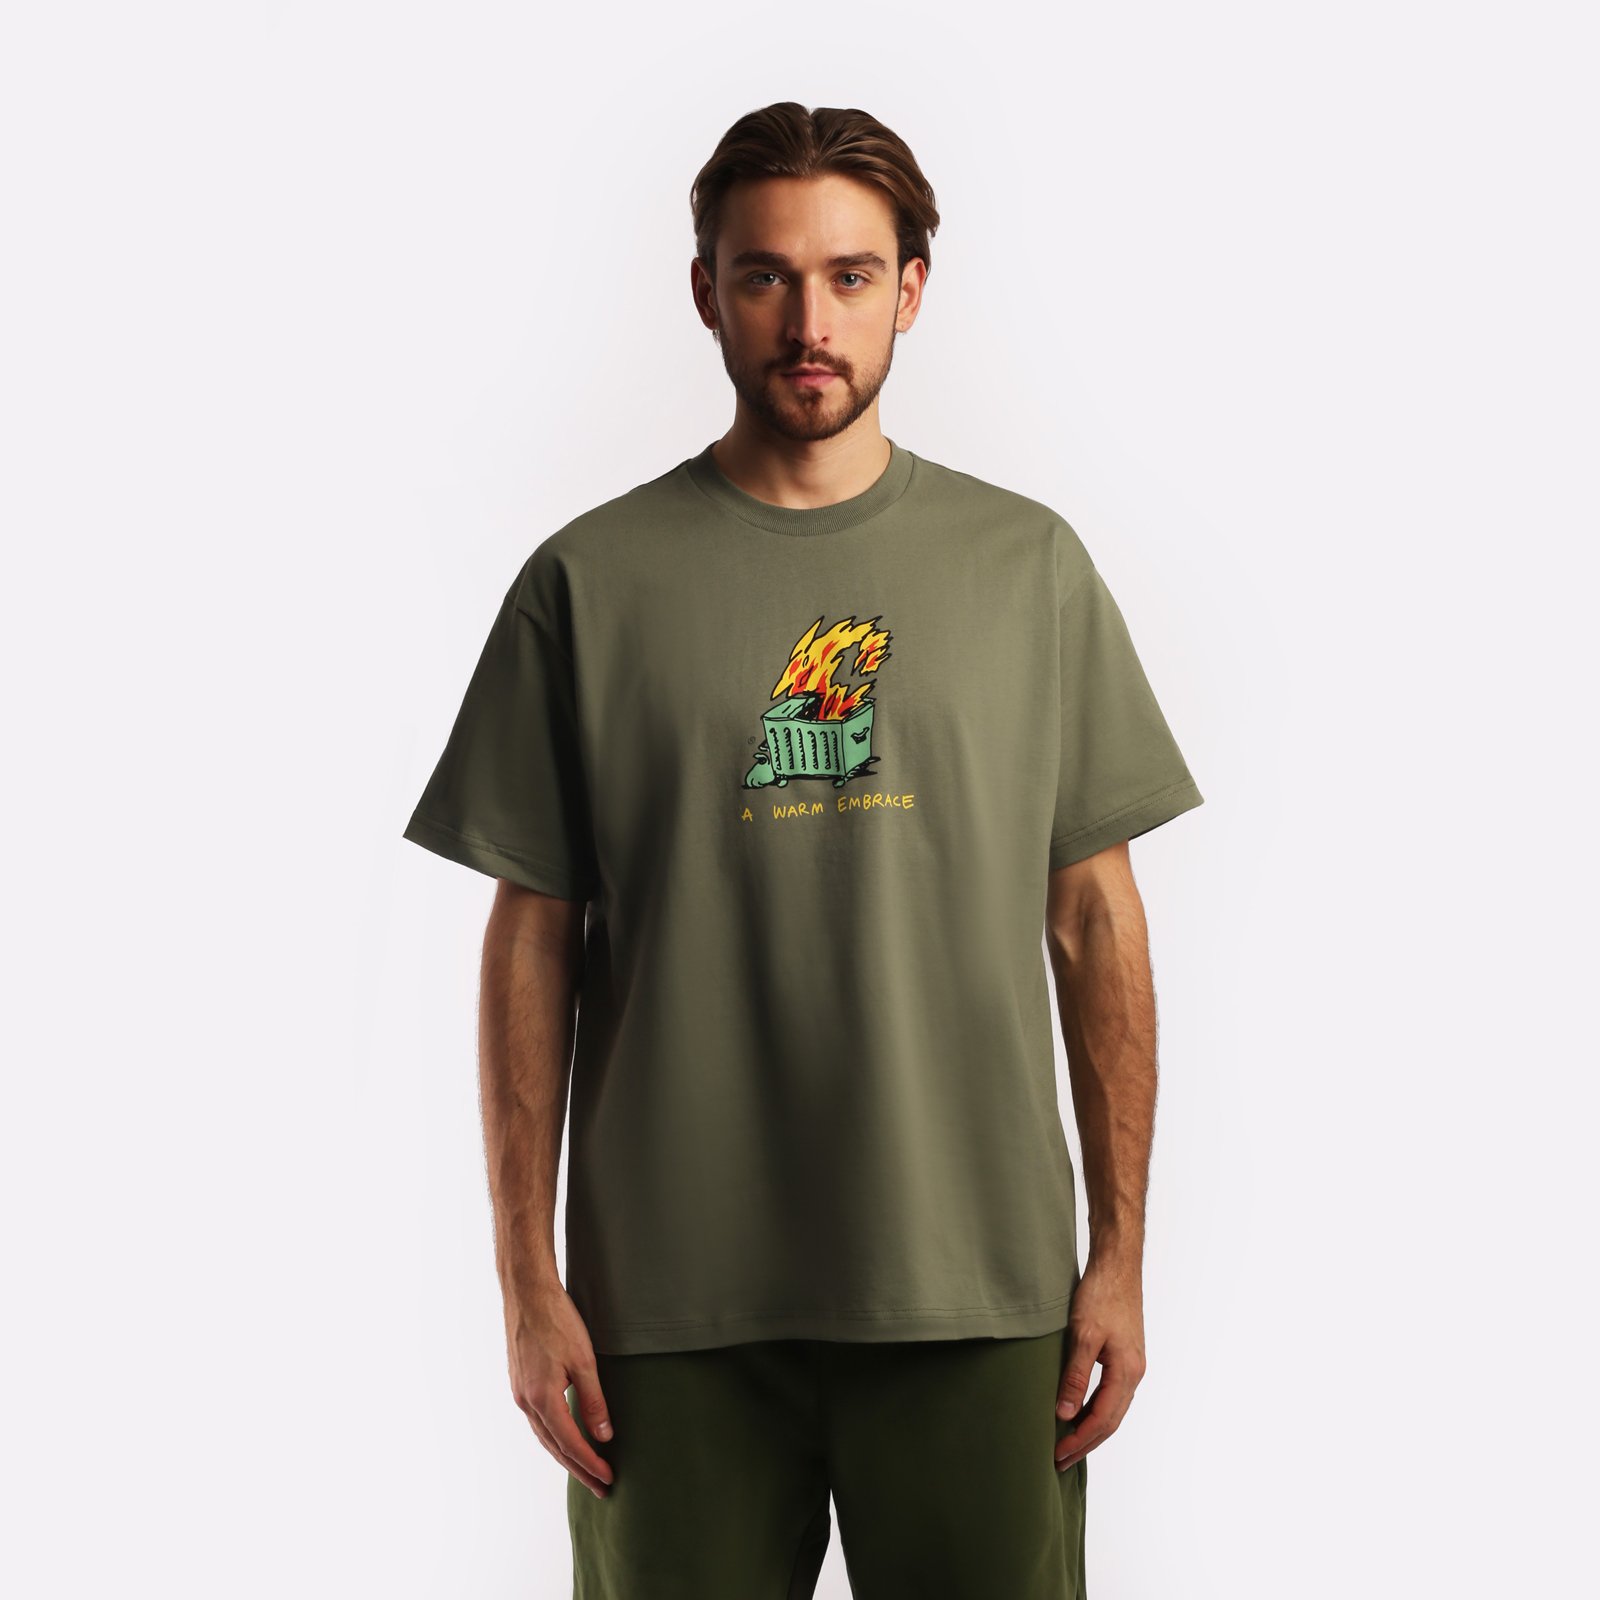 мужская футболка Carhartt WIP S/S Warm Embrace T-Shirt  (I032390-green) I032390-green - цена, описание, фото 1